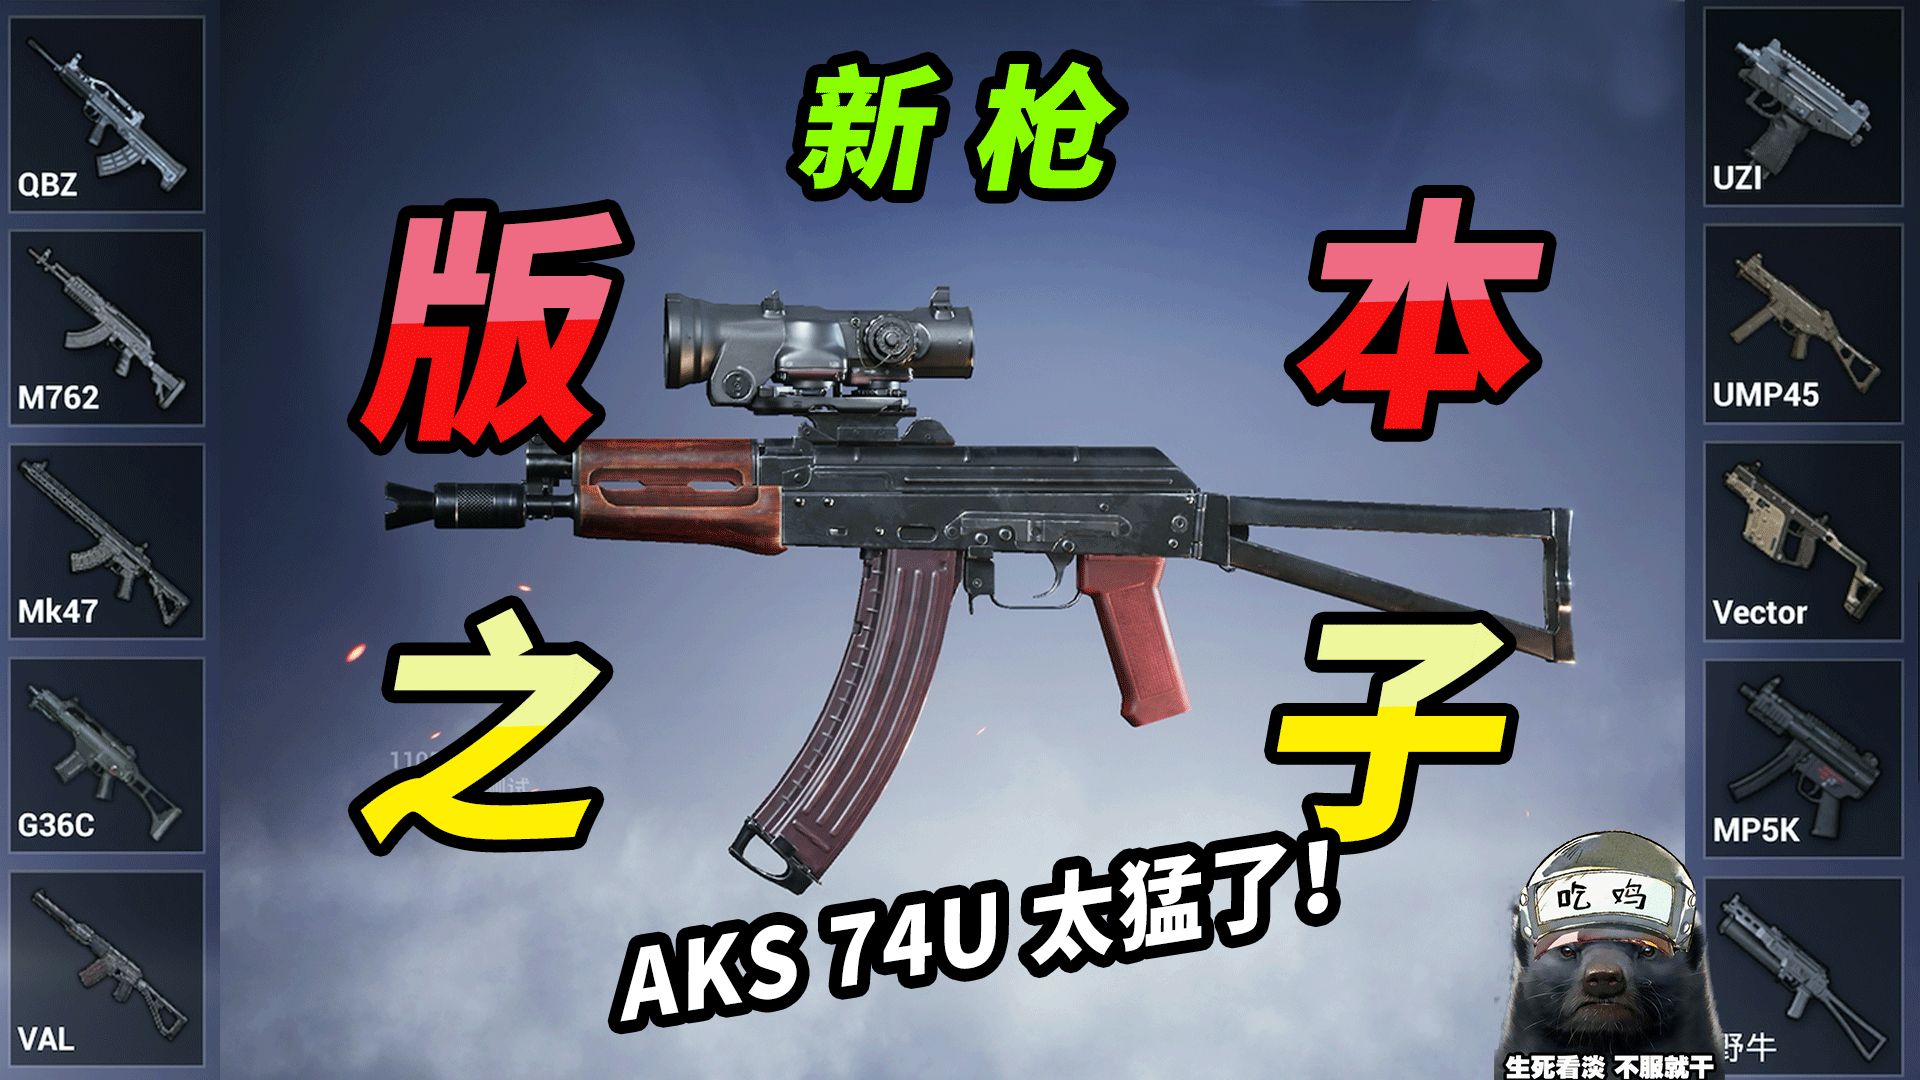 新枪AKS-74U——用之前没想到这么猛